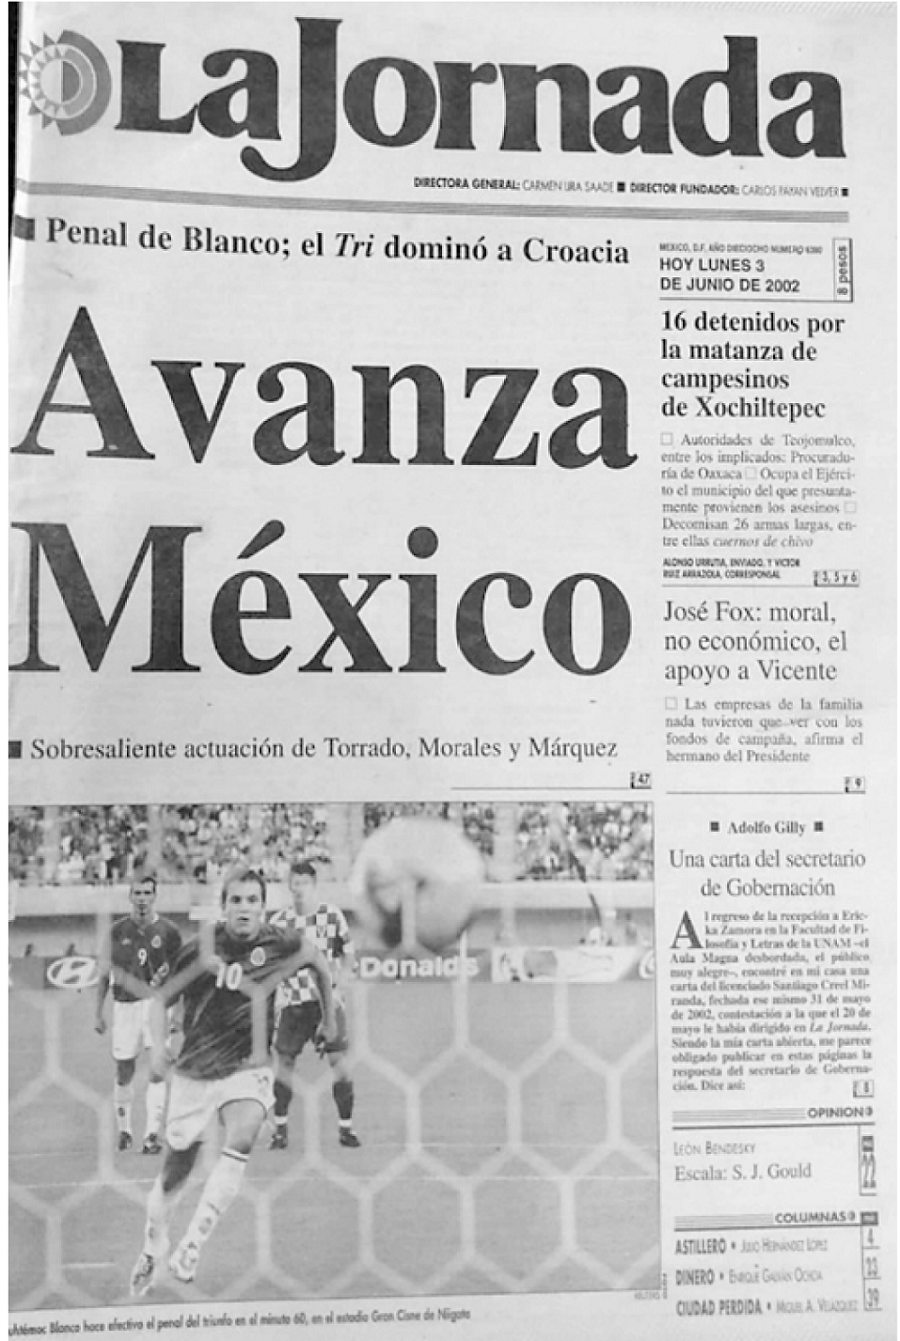 Primera plana del diario “La Jornada” del lunes 03 de junio de 2002